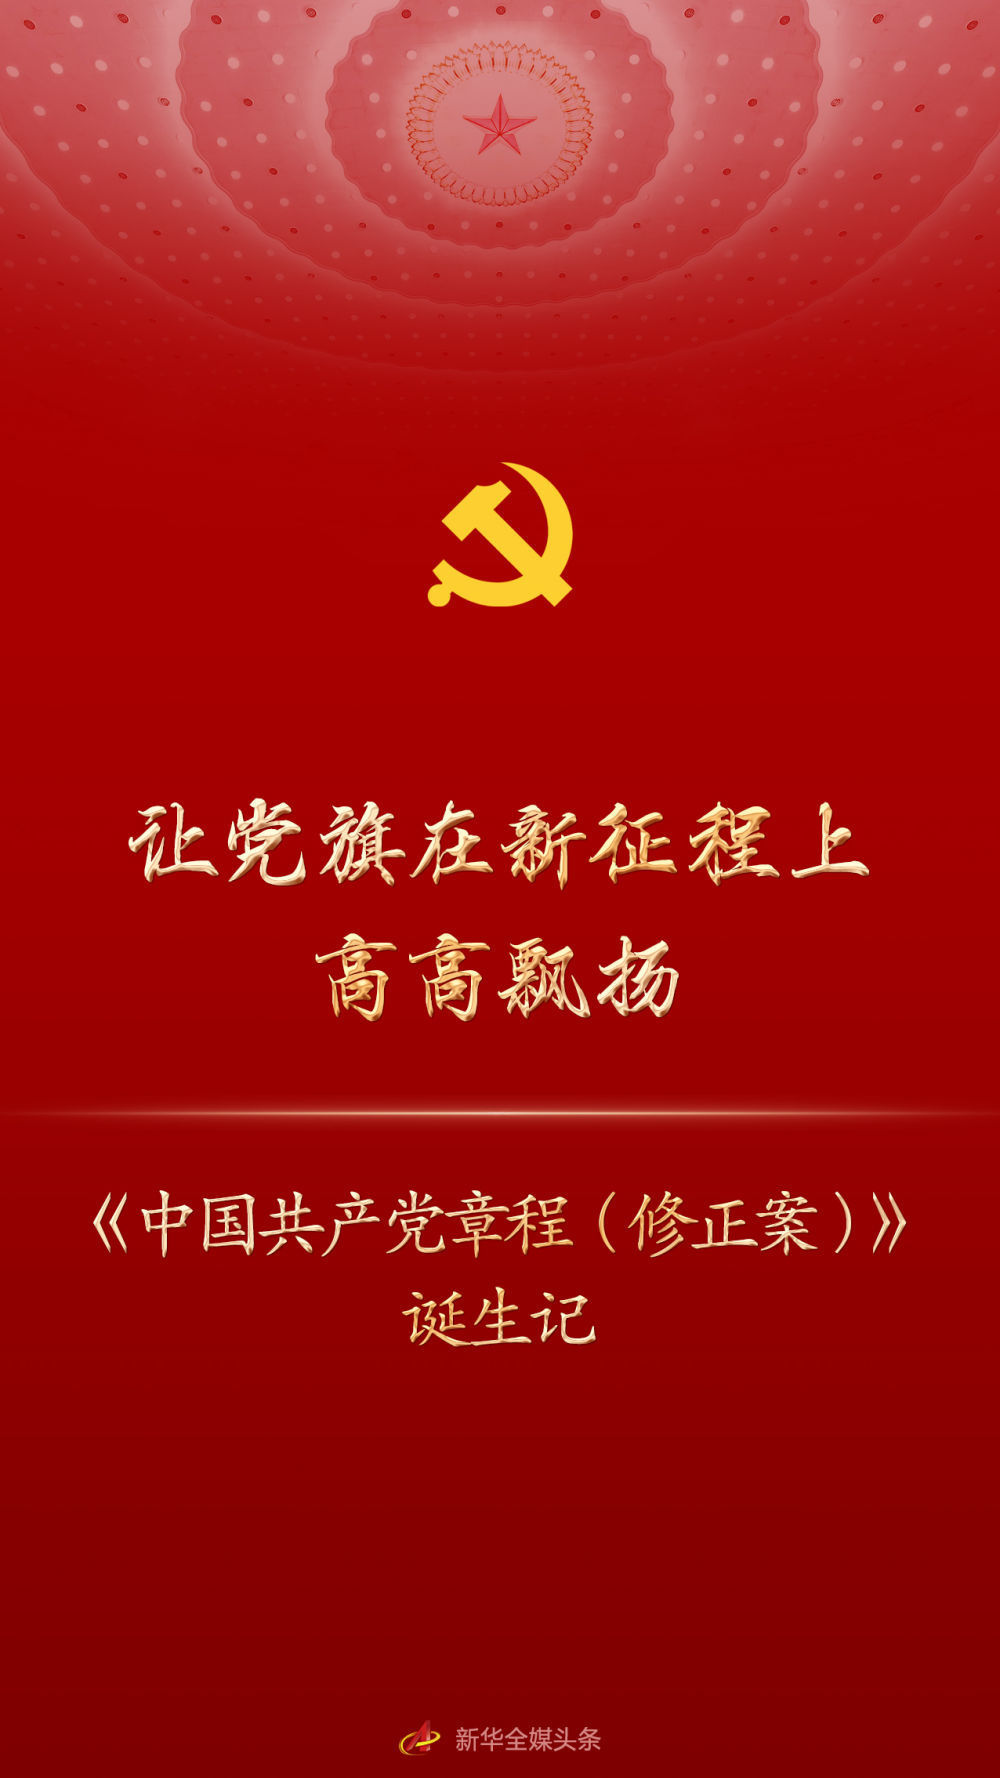 中国共产党章程英语书五年级上册电子书